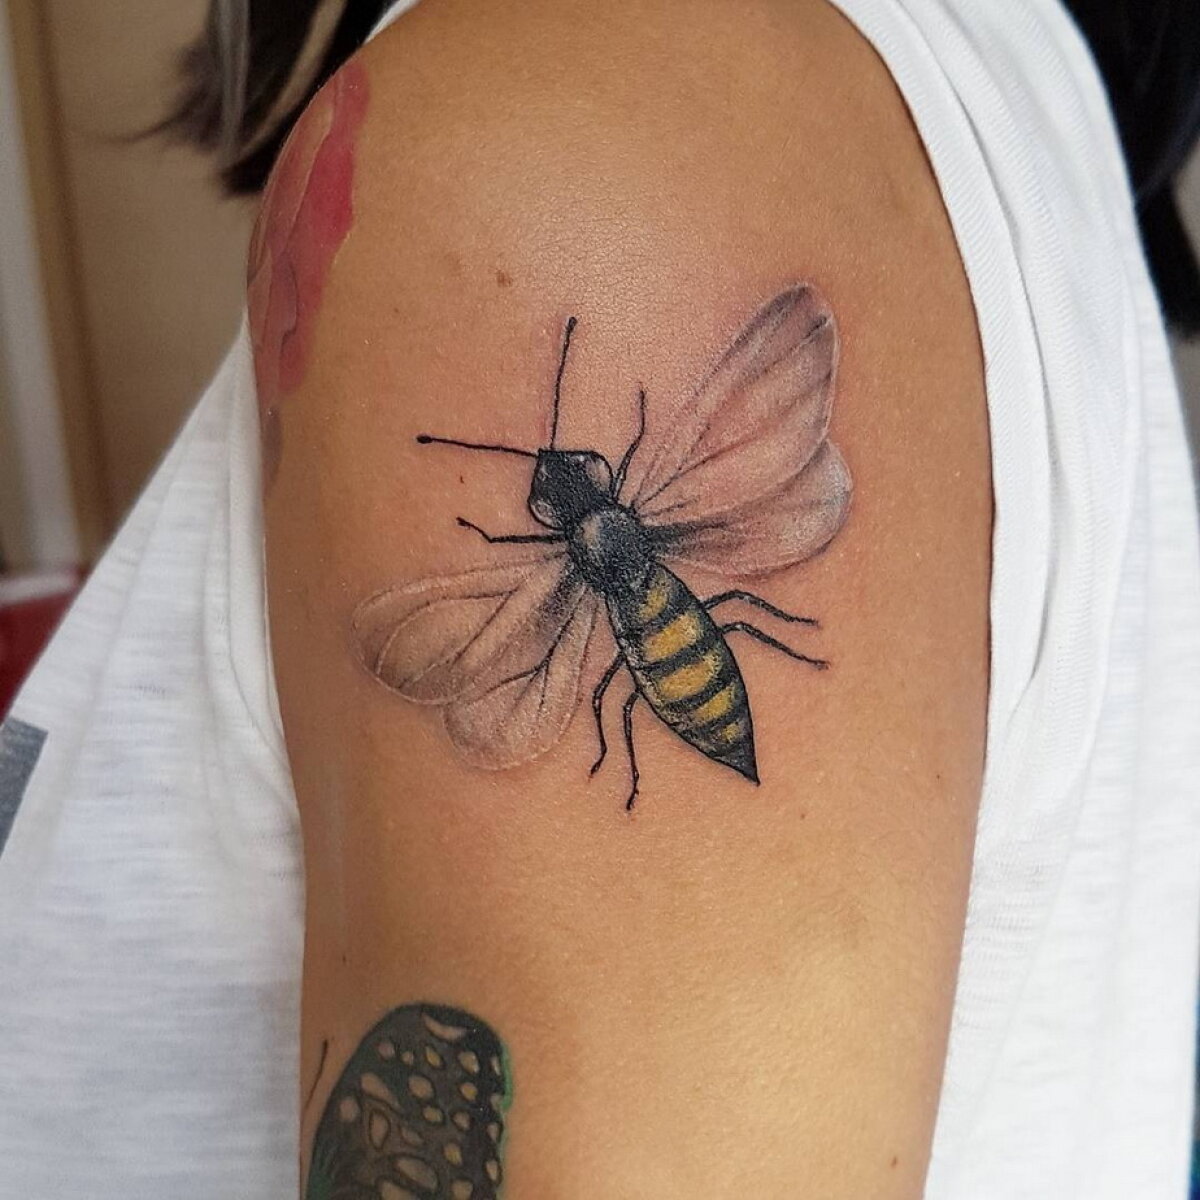 FOTO Câți bani s-au adunat prin tatuajele cu albine pentru victimele atentatului din Manchester